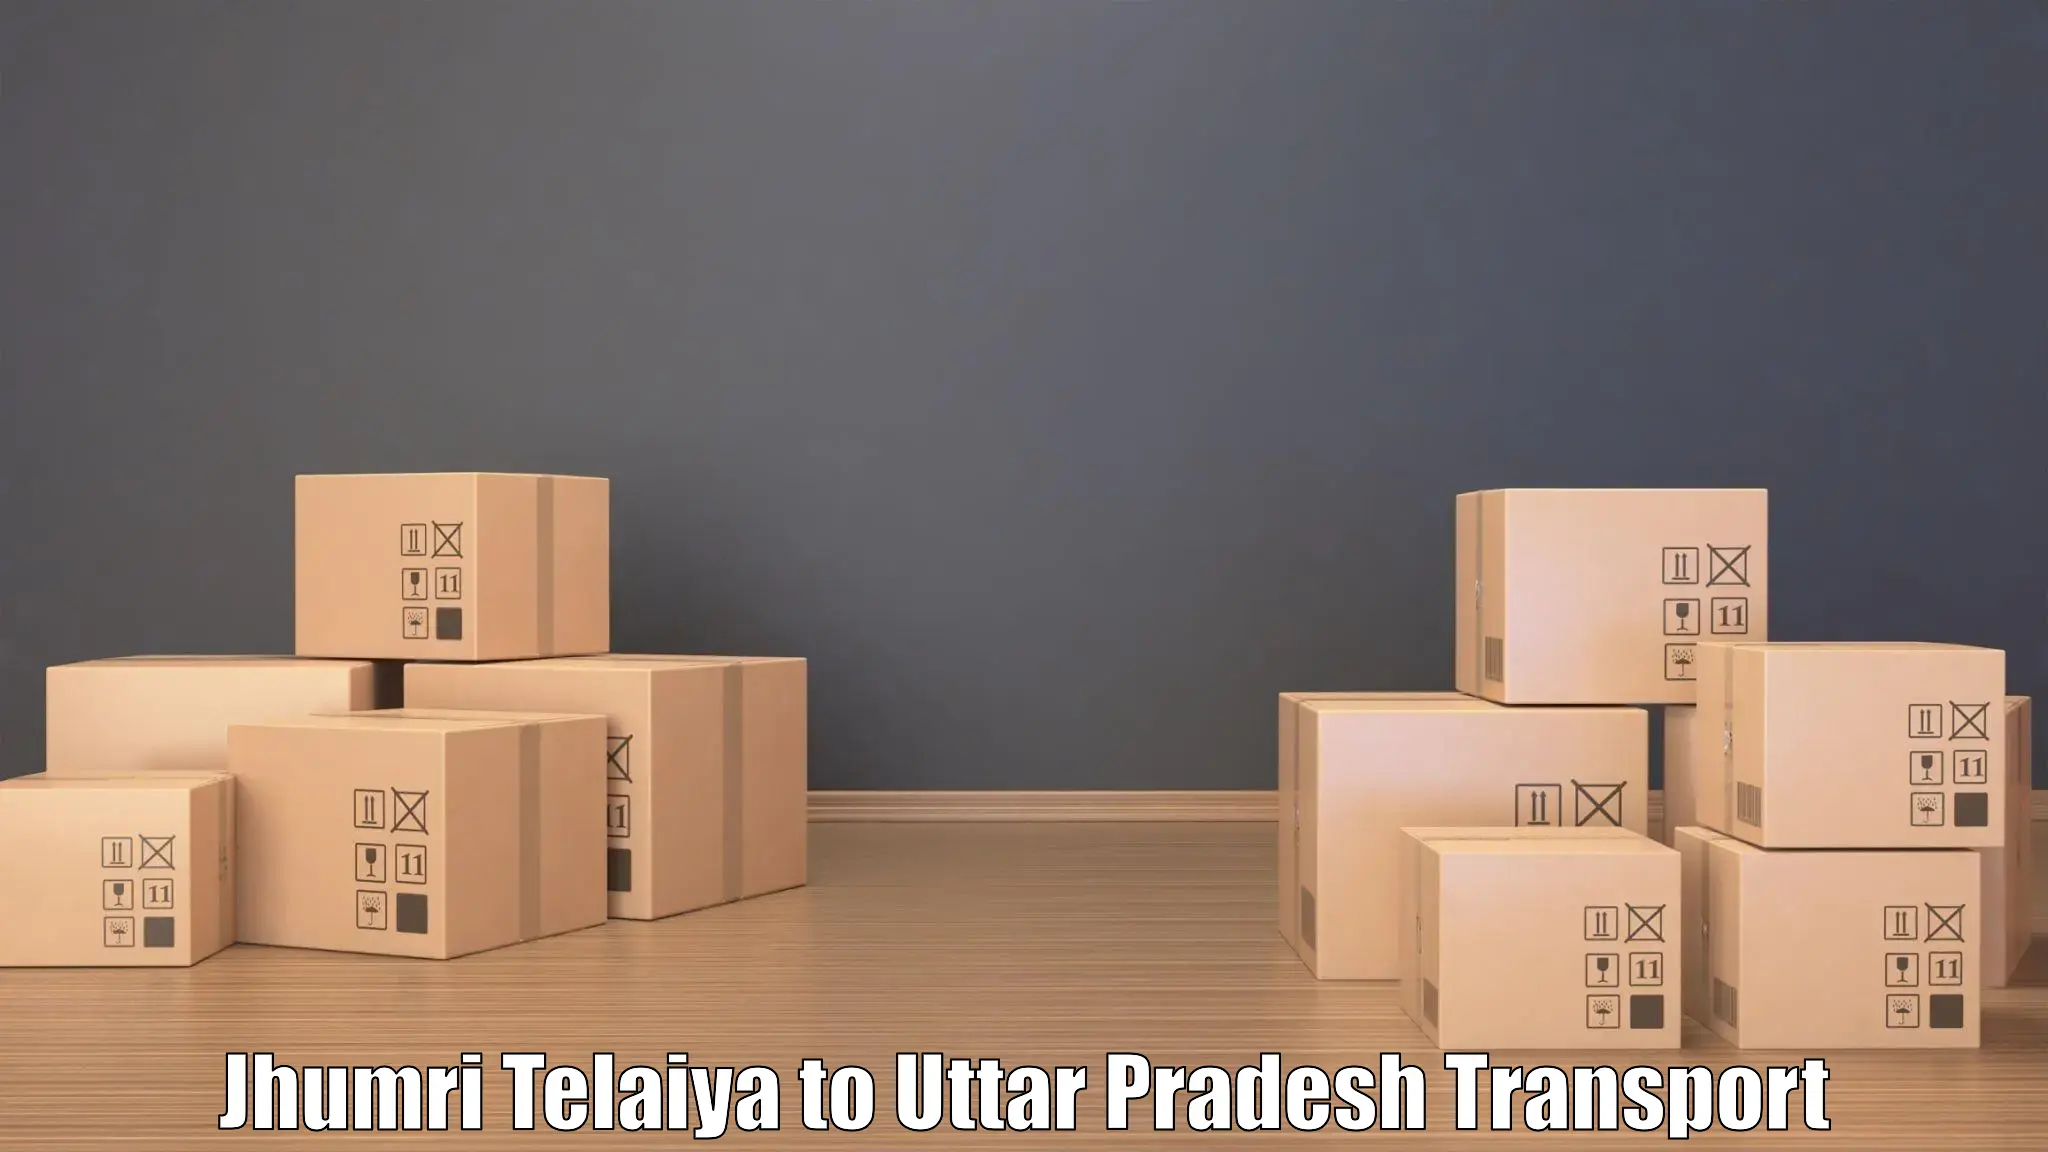 Luggage transport services Jhumri Telaiya to Konch